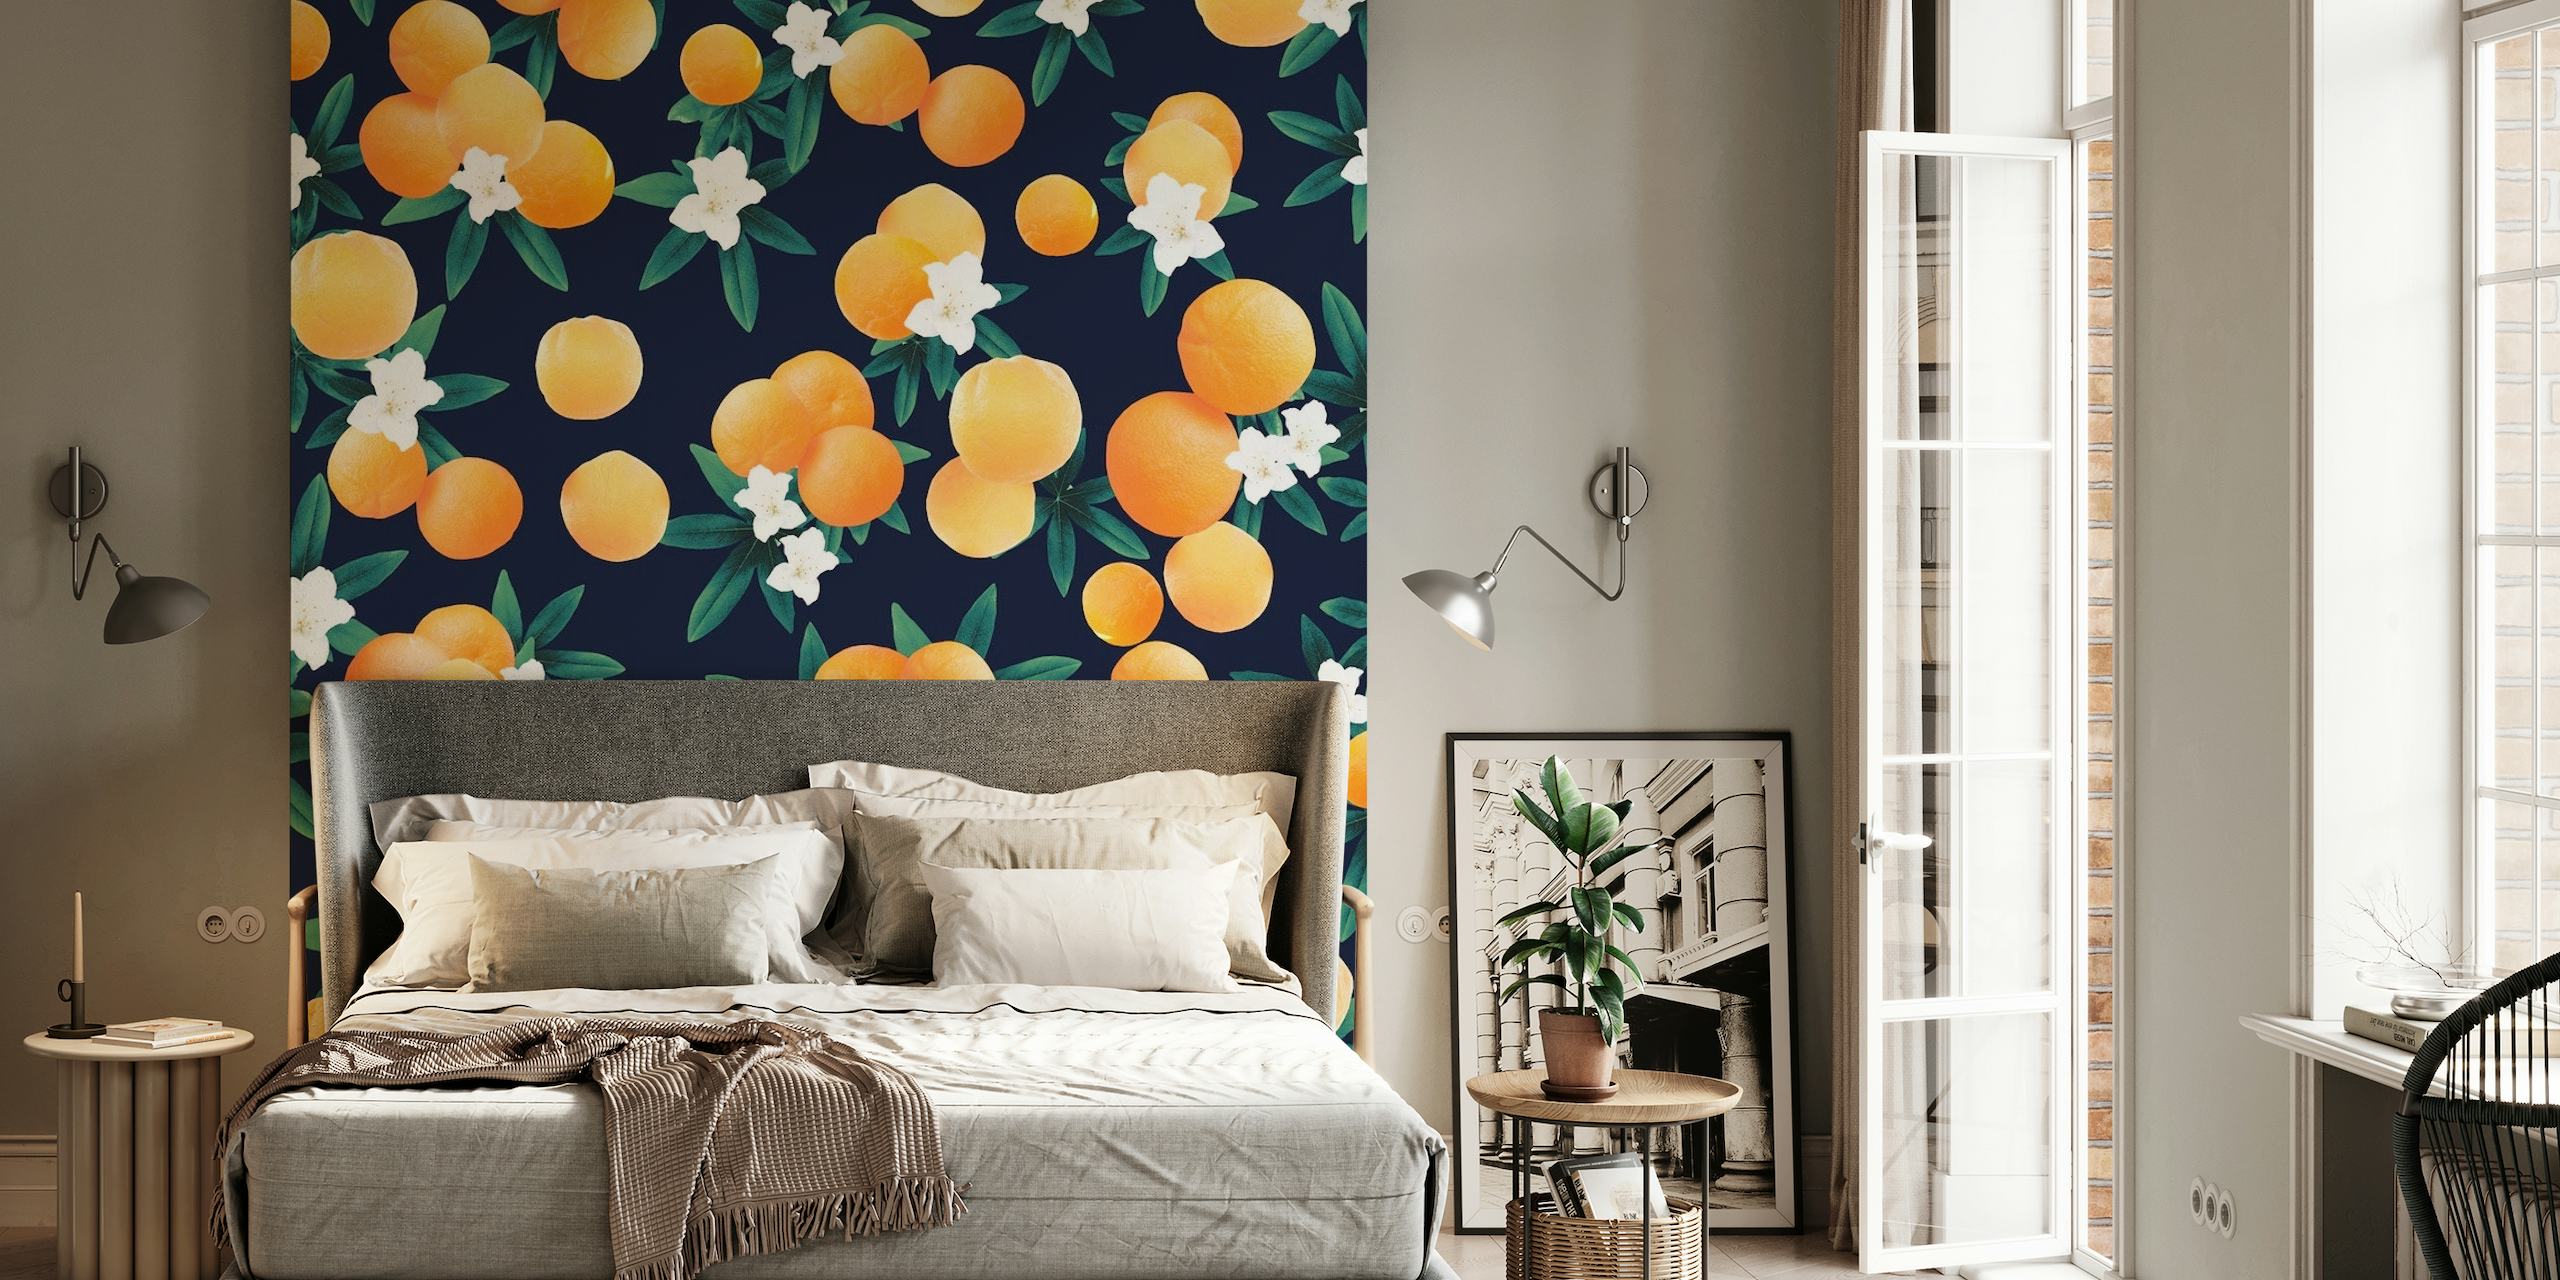 Naklejka ścienna przedstawiająca jasnopomarańczowe owoce cytrusowe i białe kwiaty na ciemnoniebieskim tle.